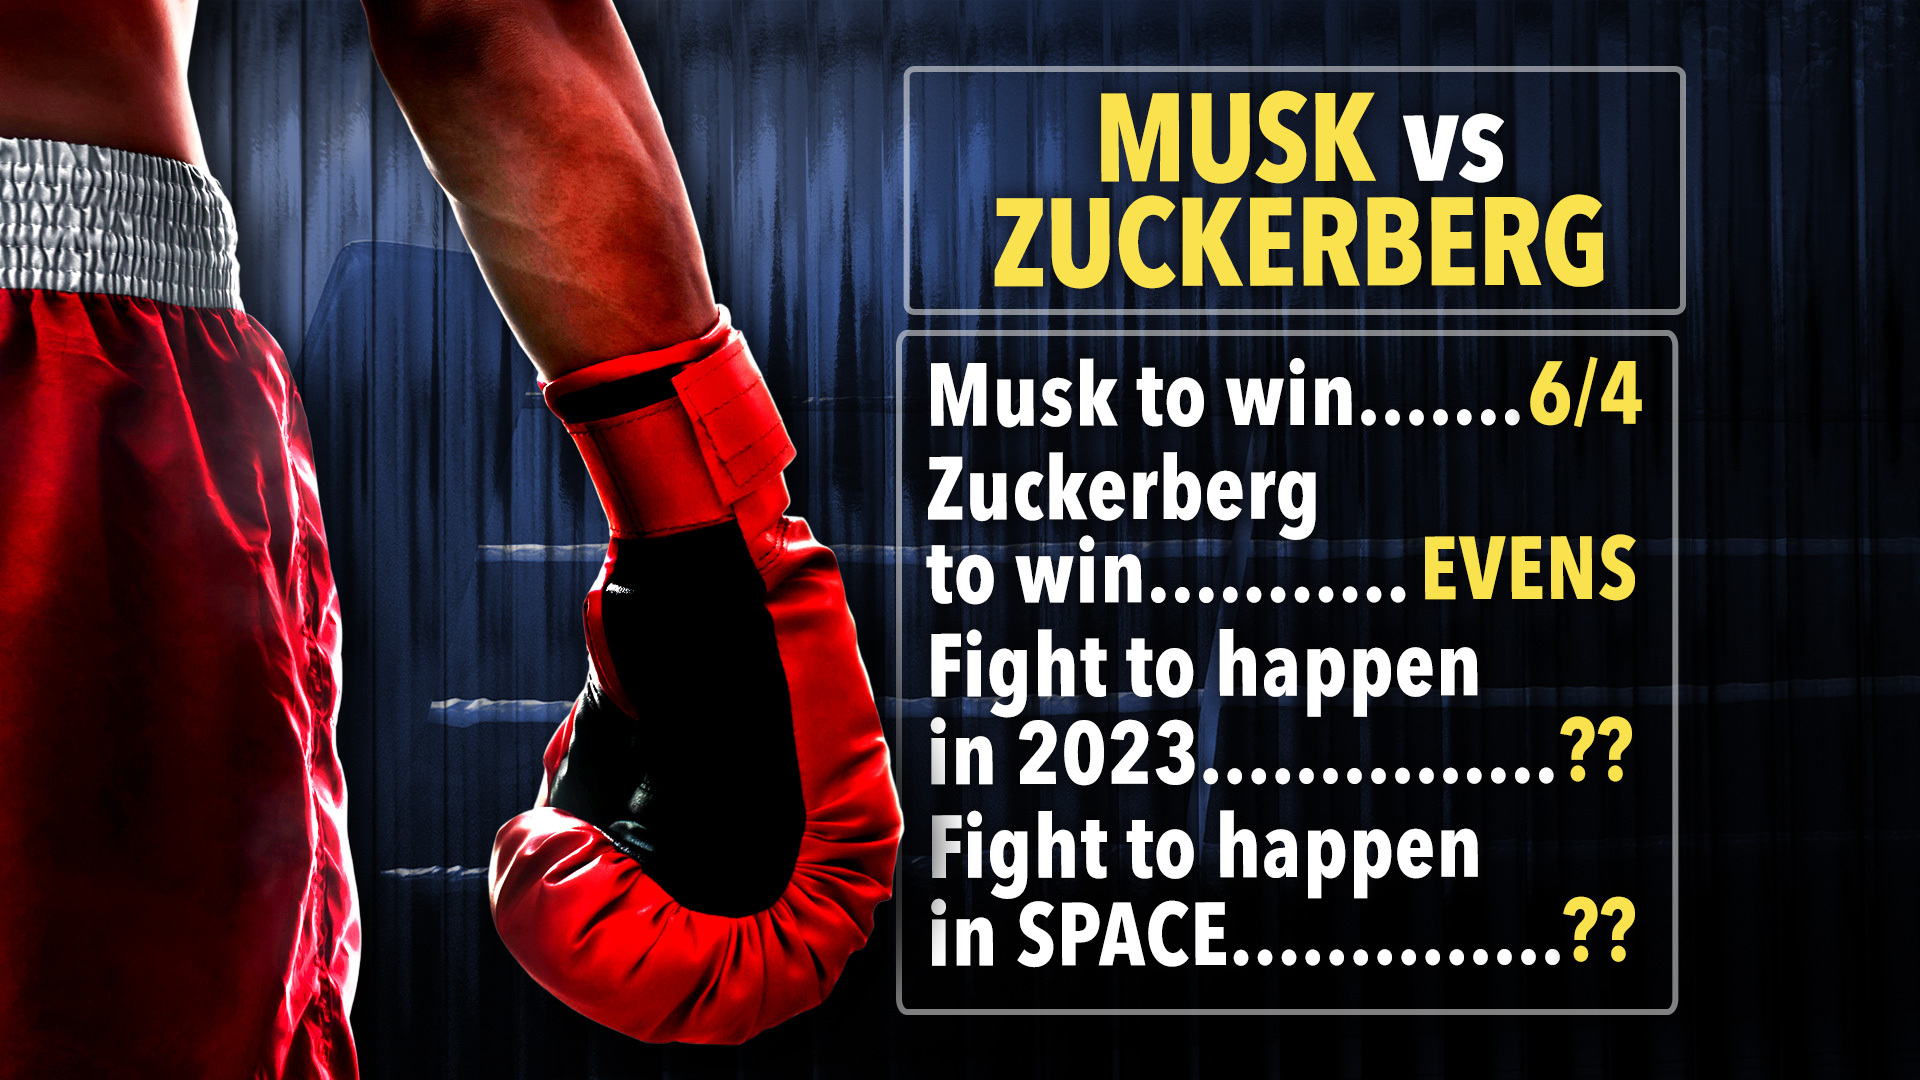 Photo: musk vs zuckerberg betting